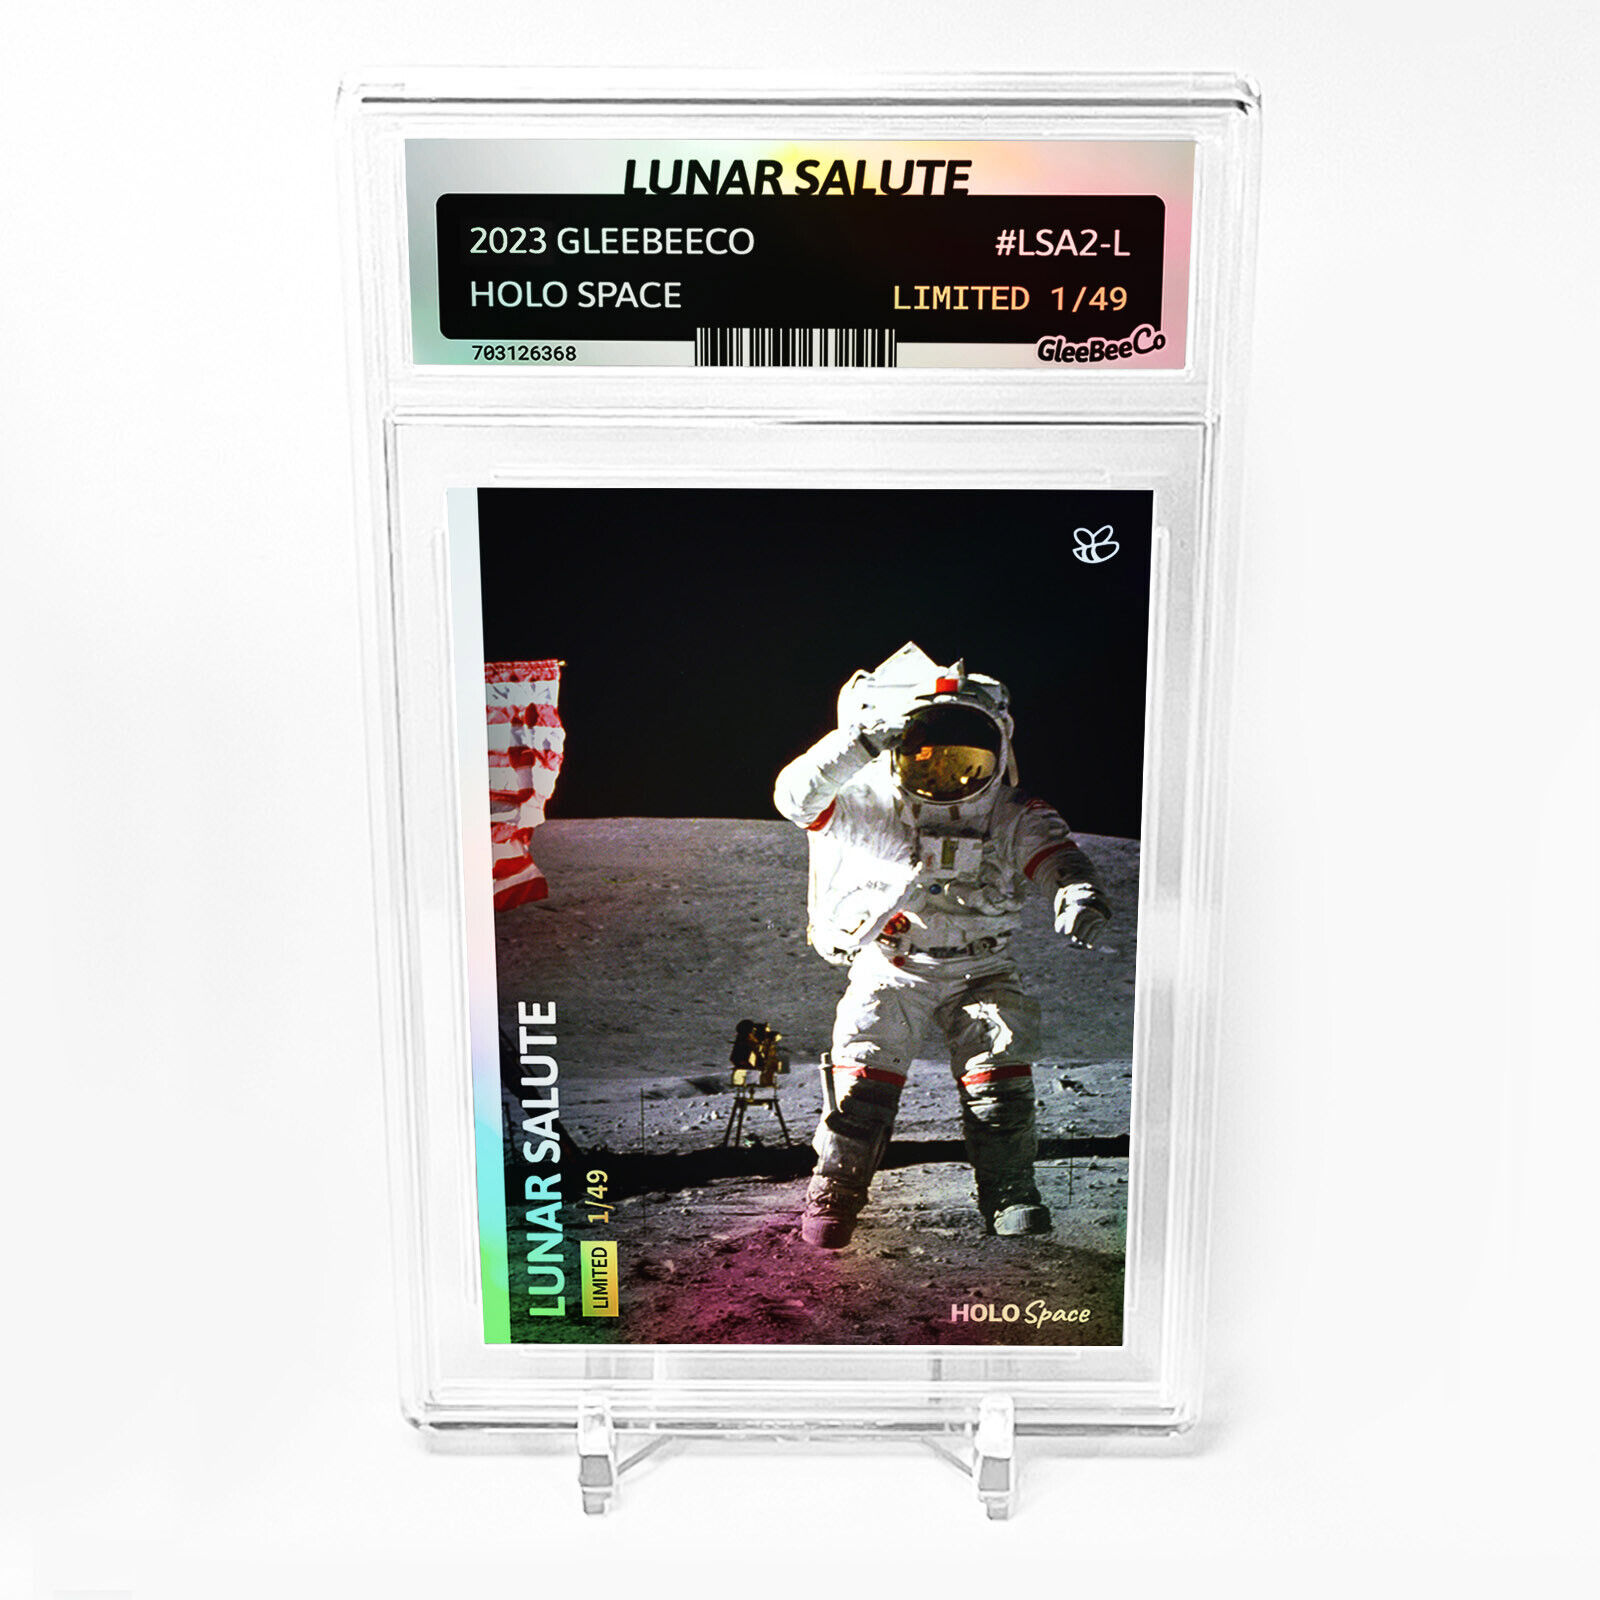 LUNAR SALUTE Apollo 16 Photo Card 2023 GleeBeeCo Holo Space #LSA2-L /49 NASA